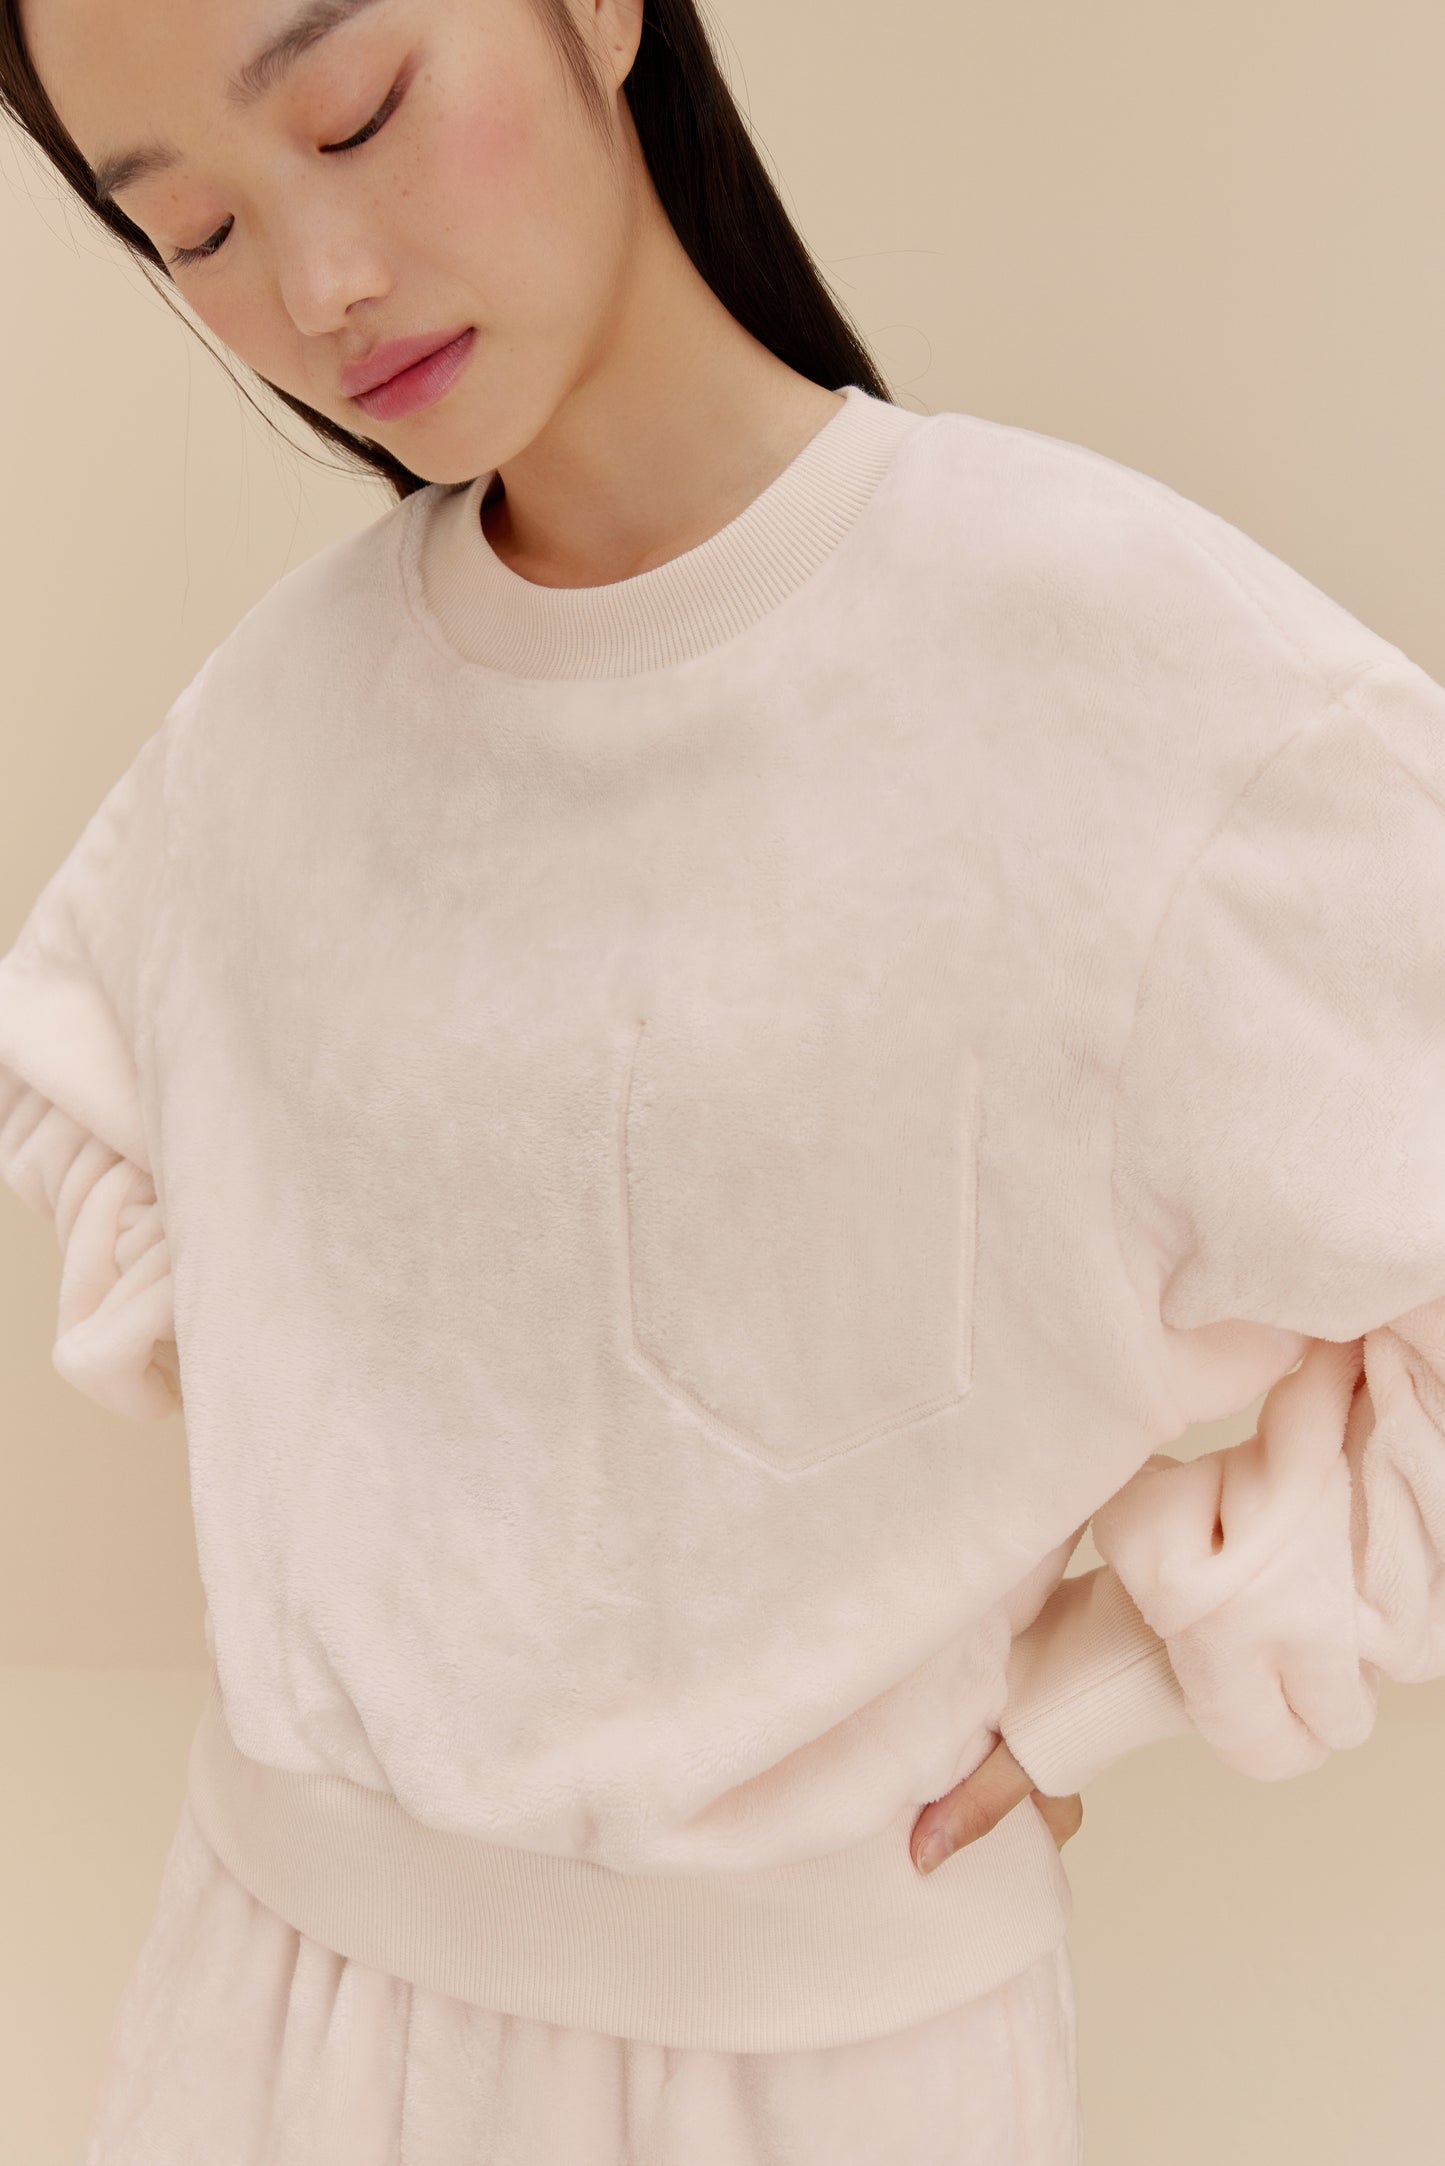 woman wearing white fleece top